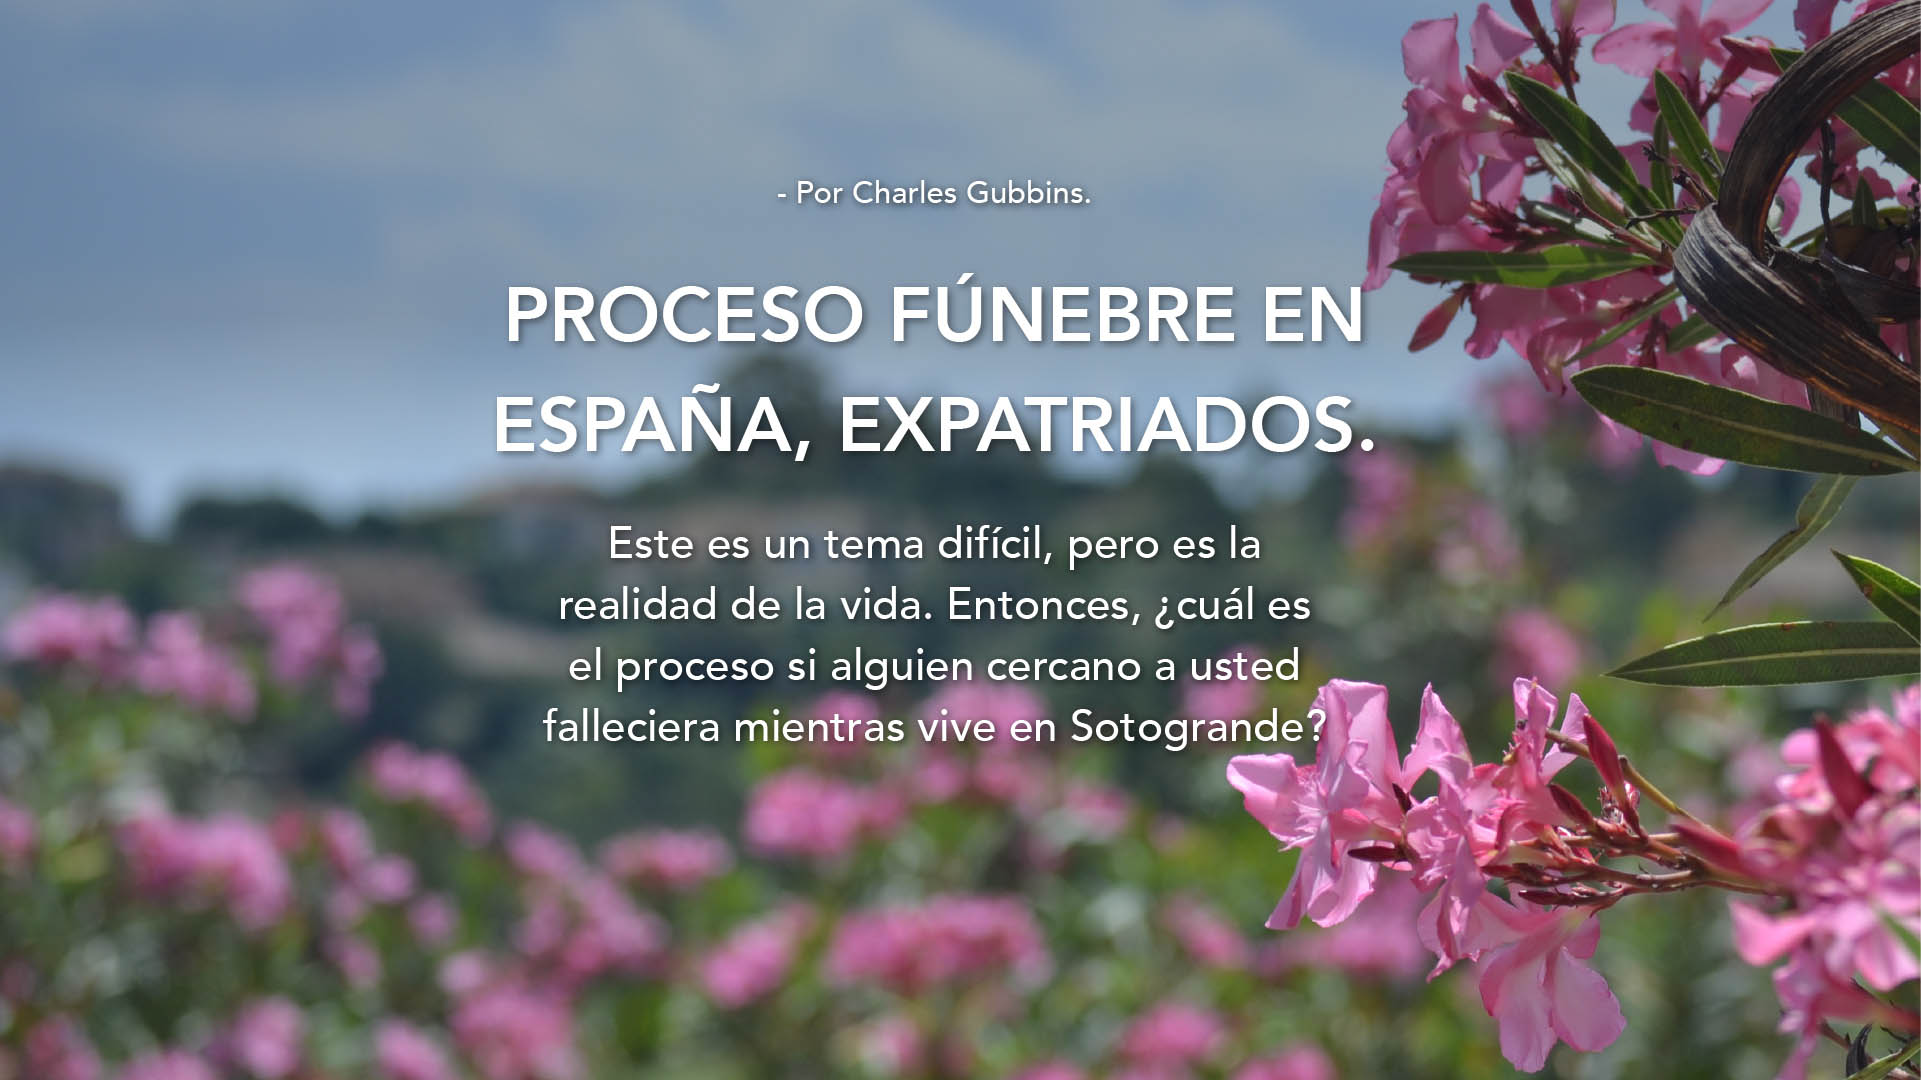 Proceso fúnebre en España para expatriados 1